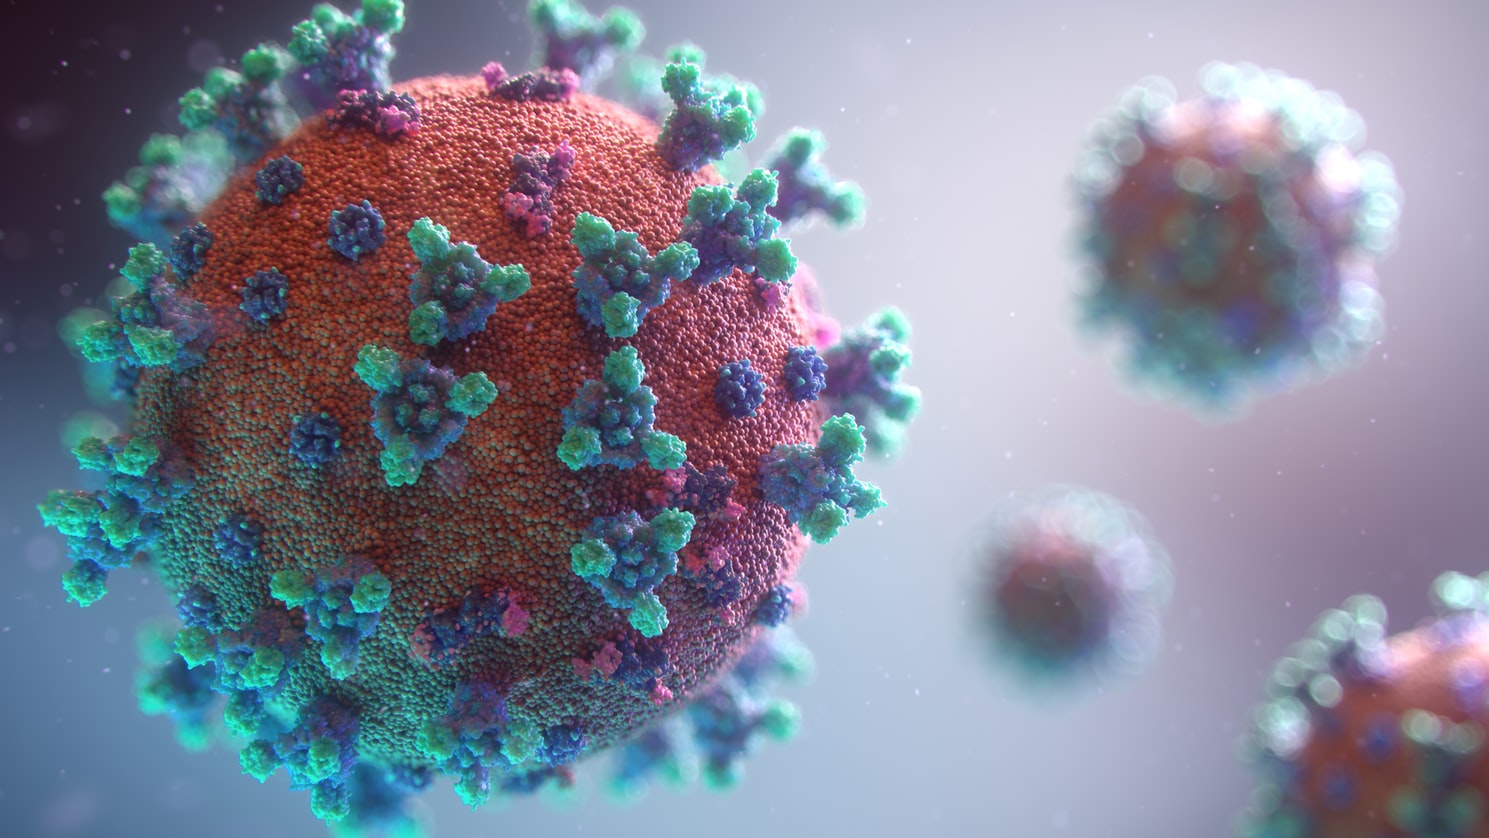 Koronavirus mədəaltı vəzini də sıradan çıxarır – Alimlər açıqladı